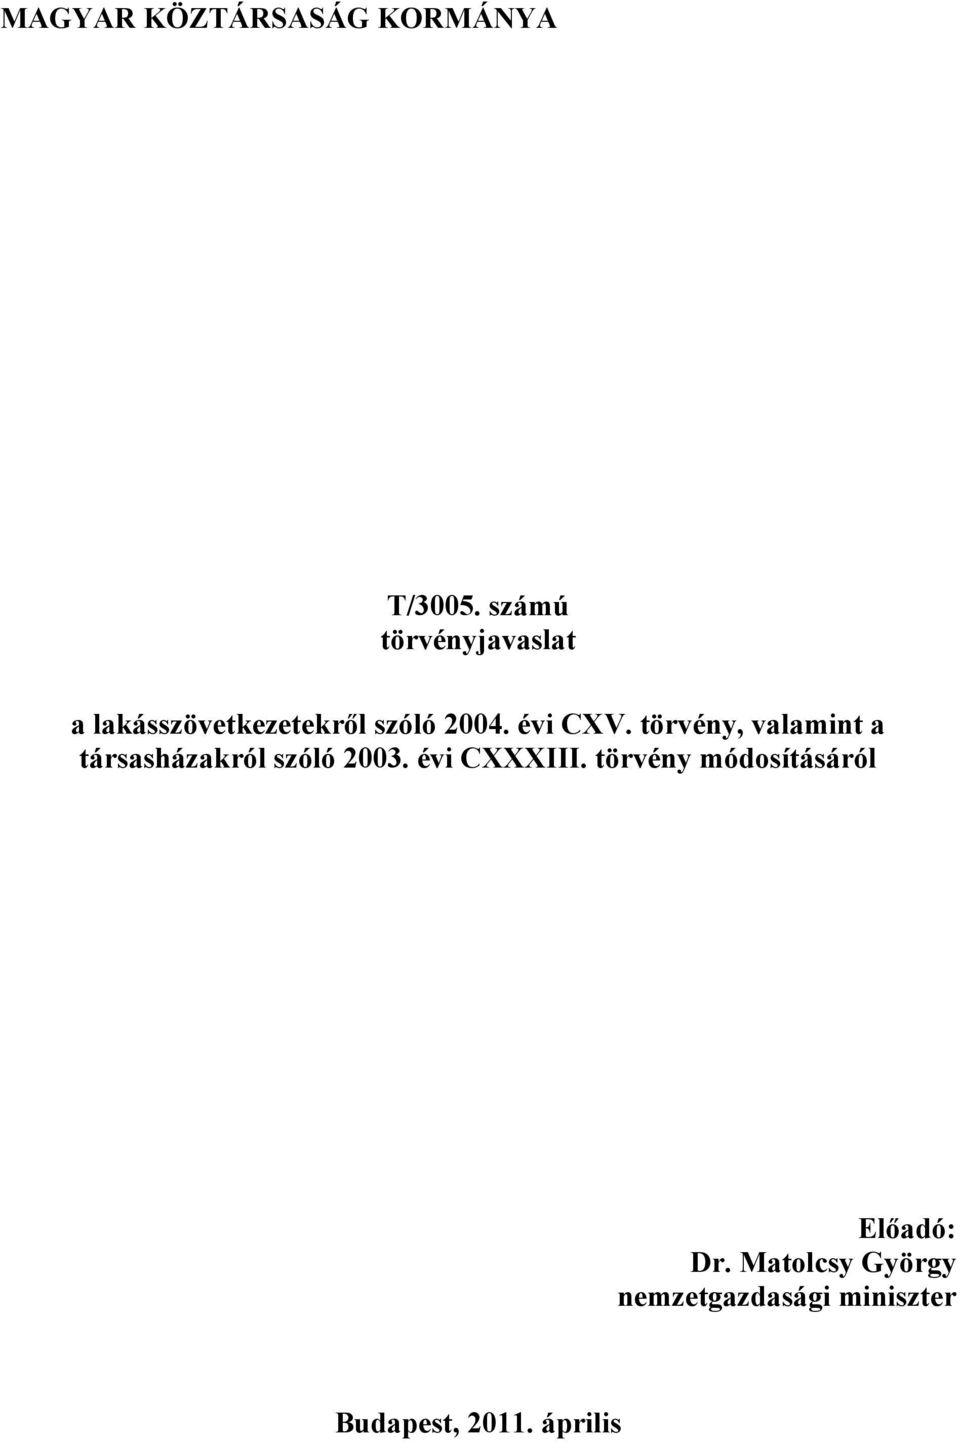 törvény, valamint a társasházakról szóló 2003. évi CXXXIII.